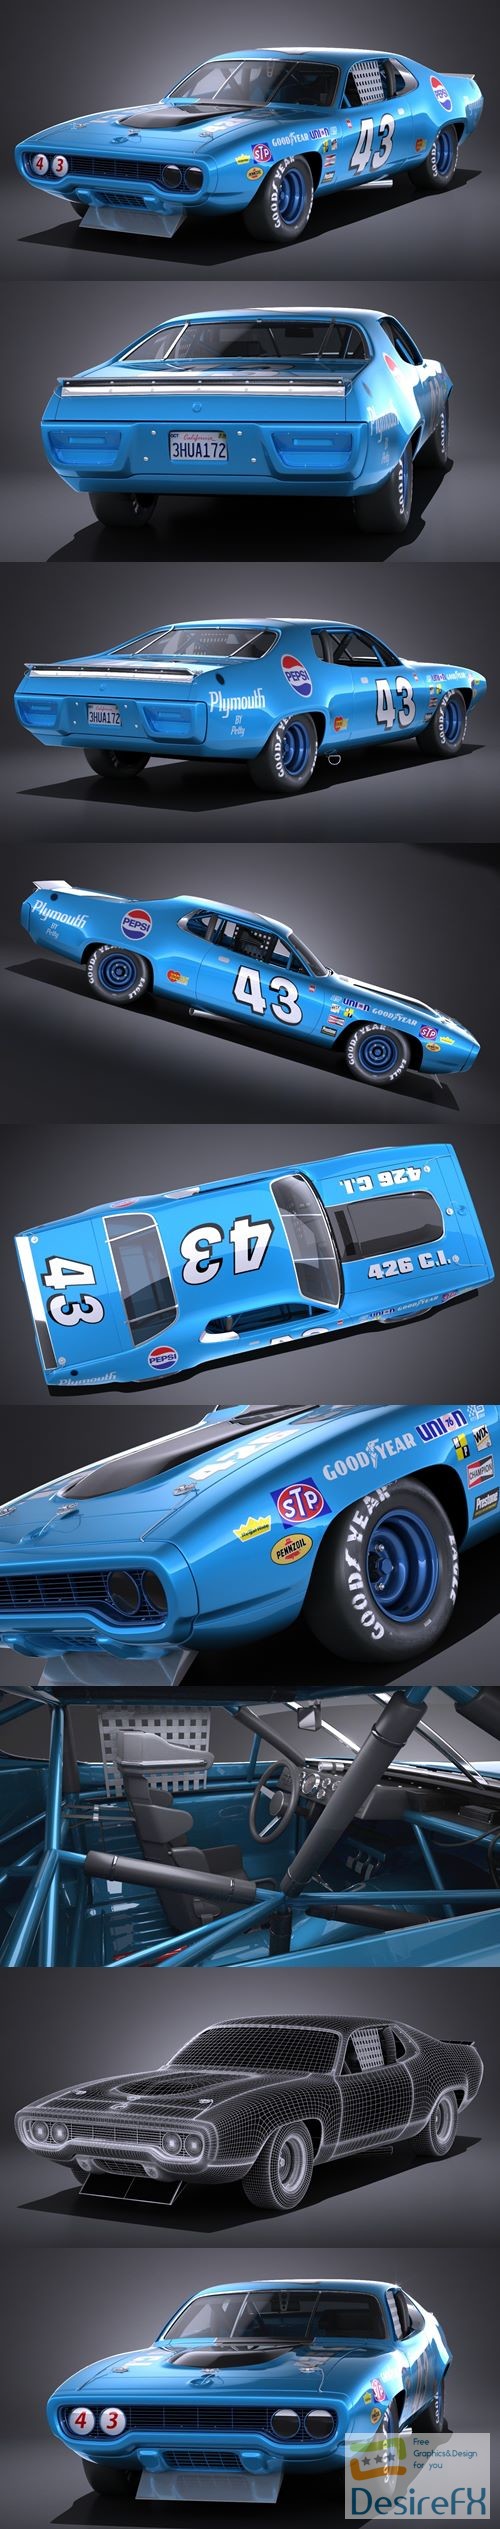 Plymouth Roadrunner NASCAR Richard Petty 1971 3D Model